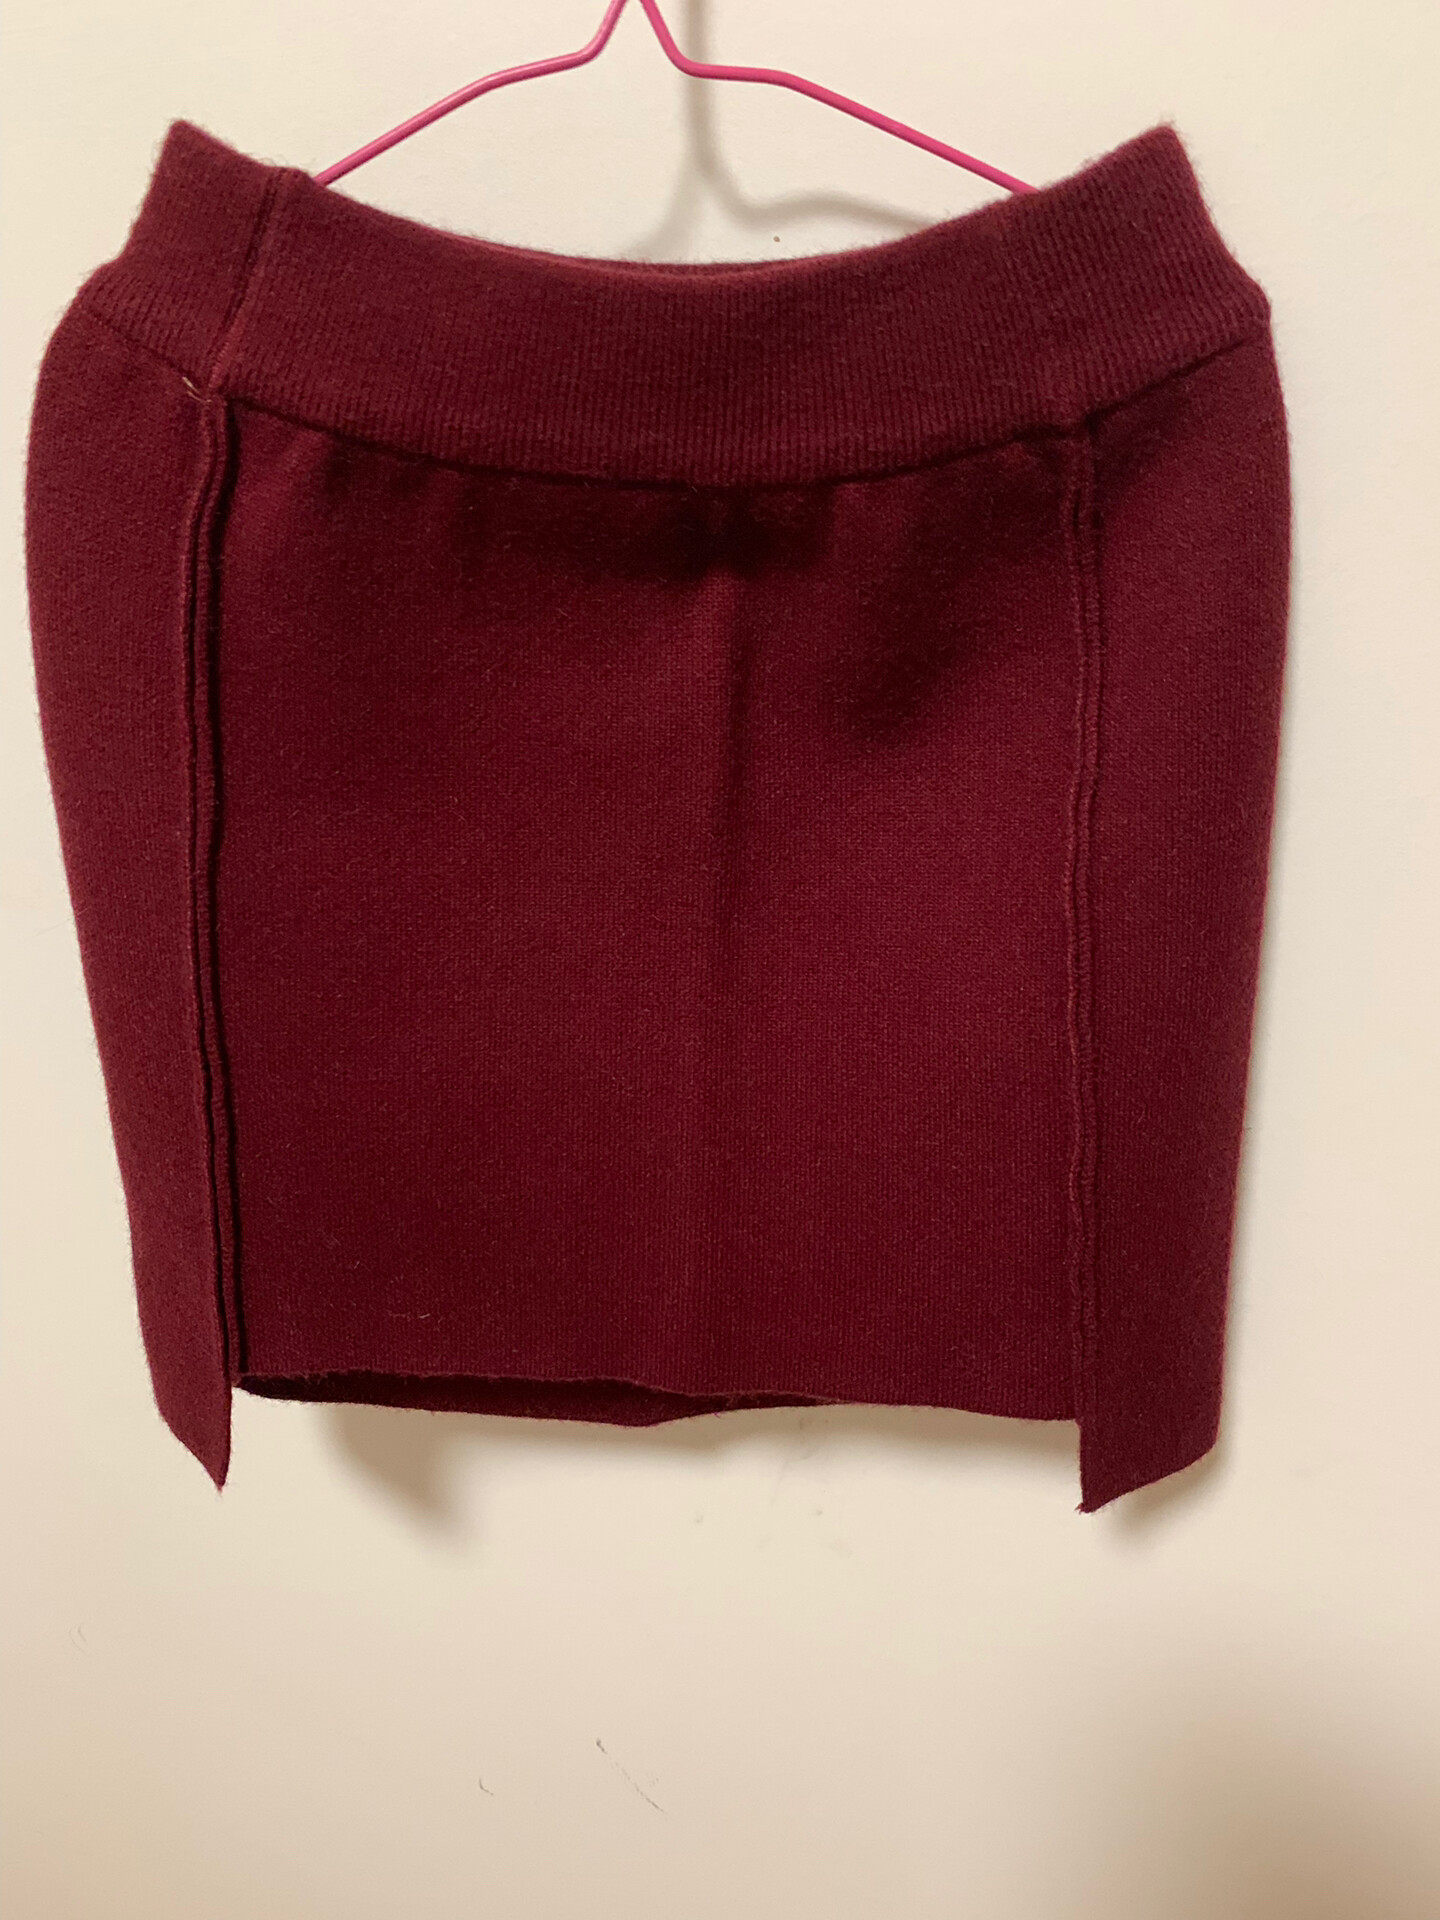 酒红色针织短裙，S码，购于当地一个专门织羊毛衫的店铺，图片没